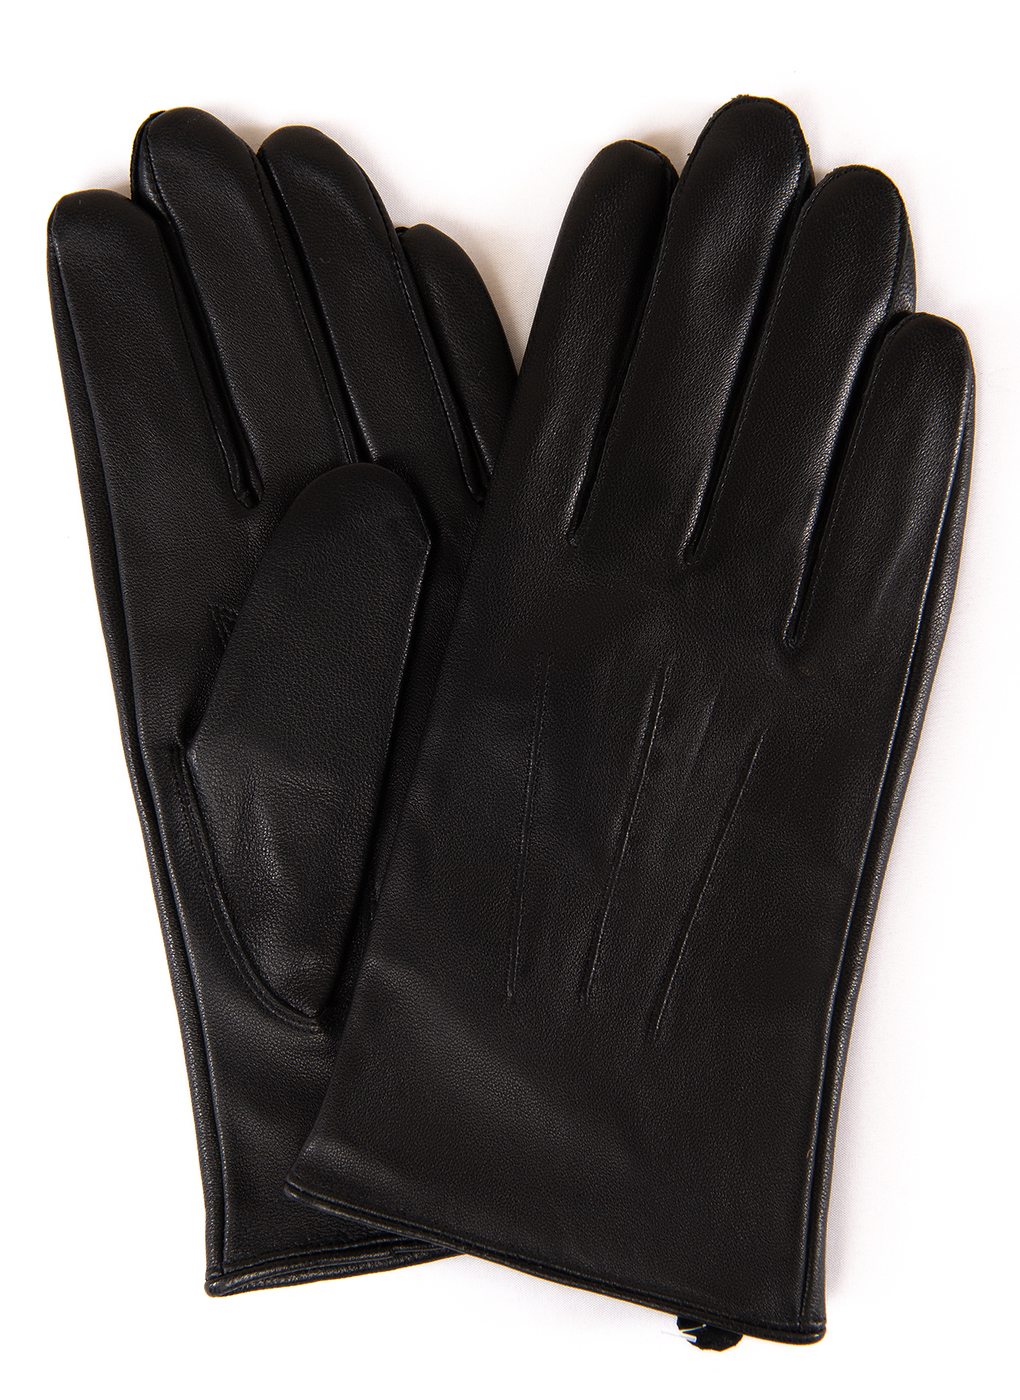 Перчатки мужские Hannelore 47238 черные, р. 9